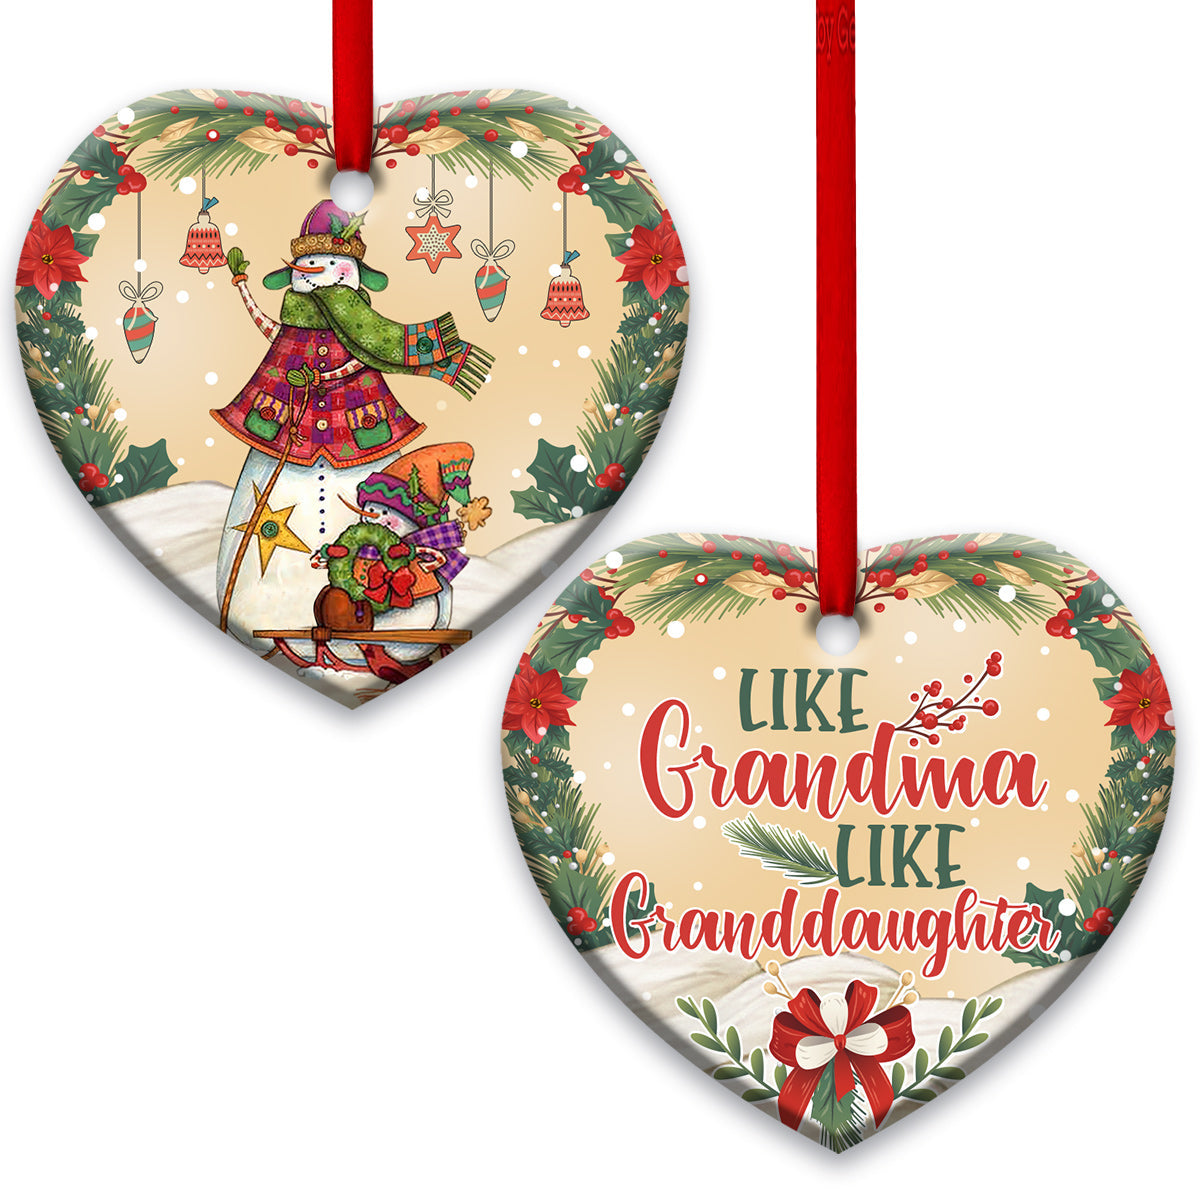 family-like-grandma-like-granddaughter-heart-ornament